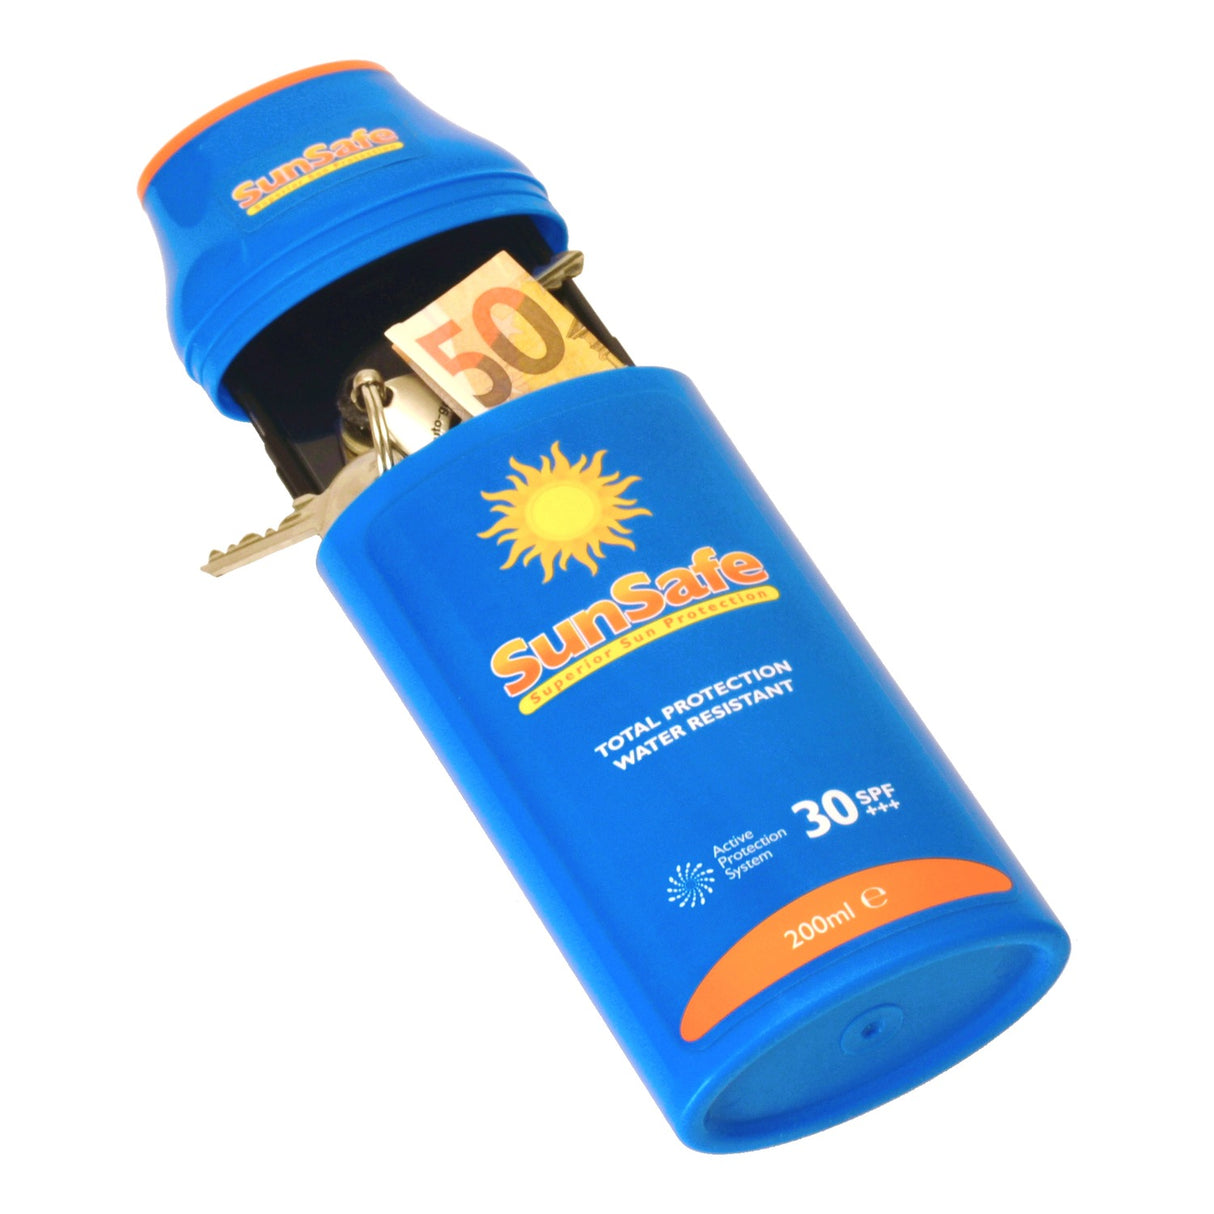 Kaufen Sie das Sun Safe Sonnencreme Schlüsselversteck - Perfekt